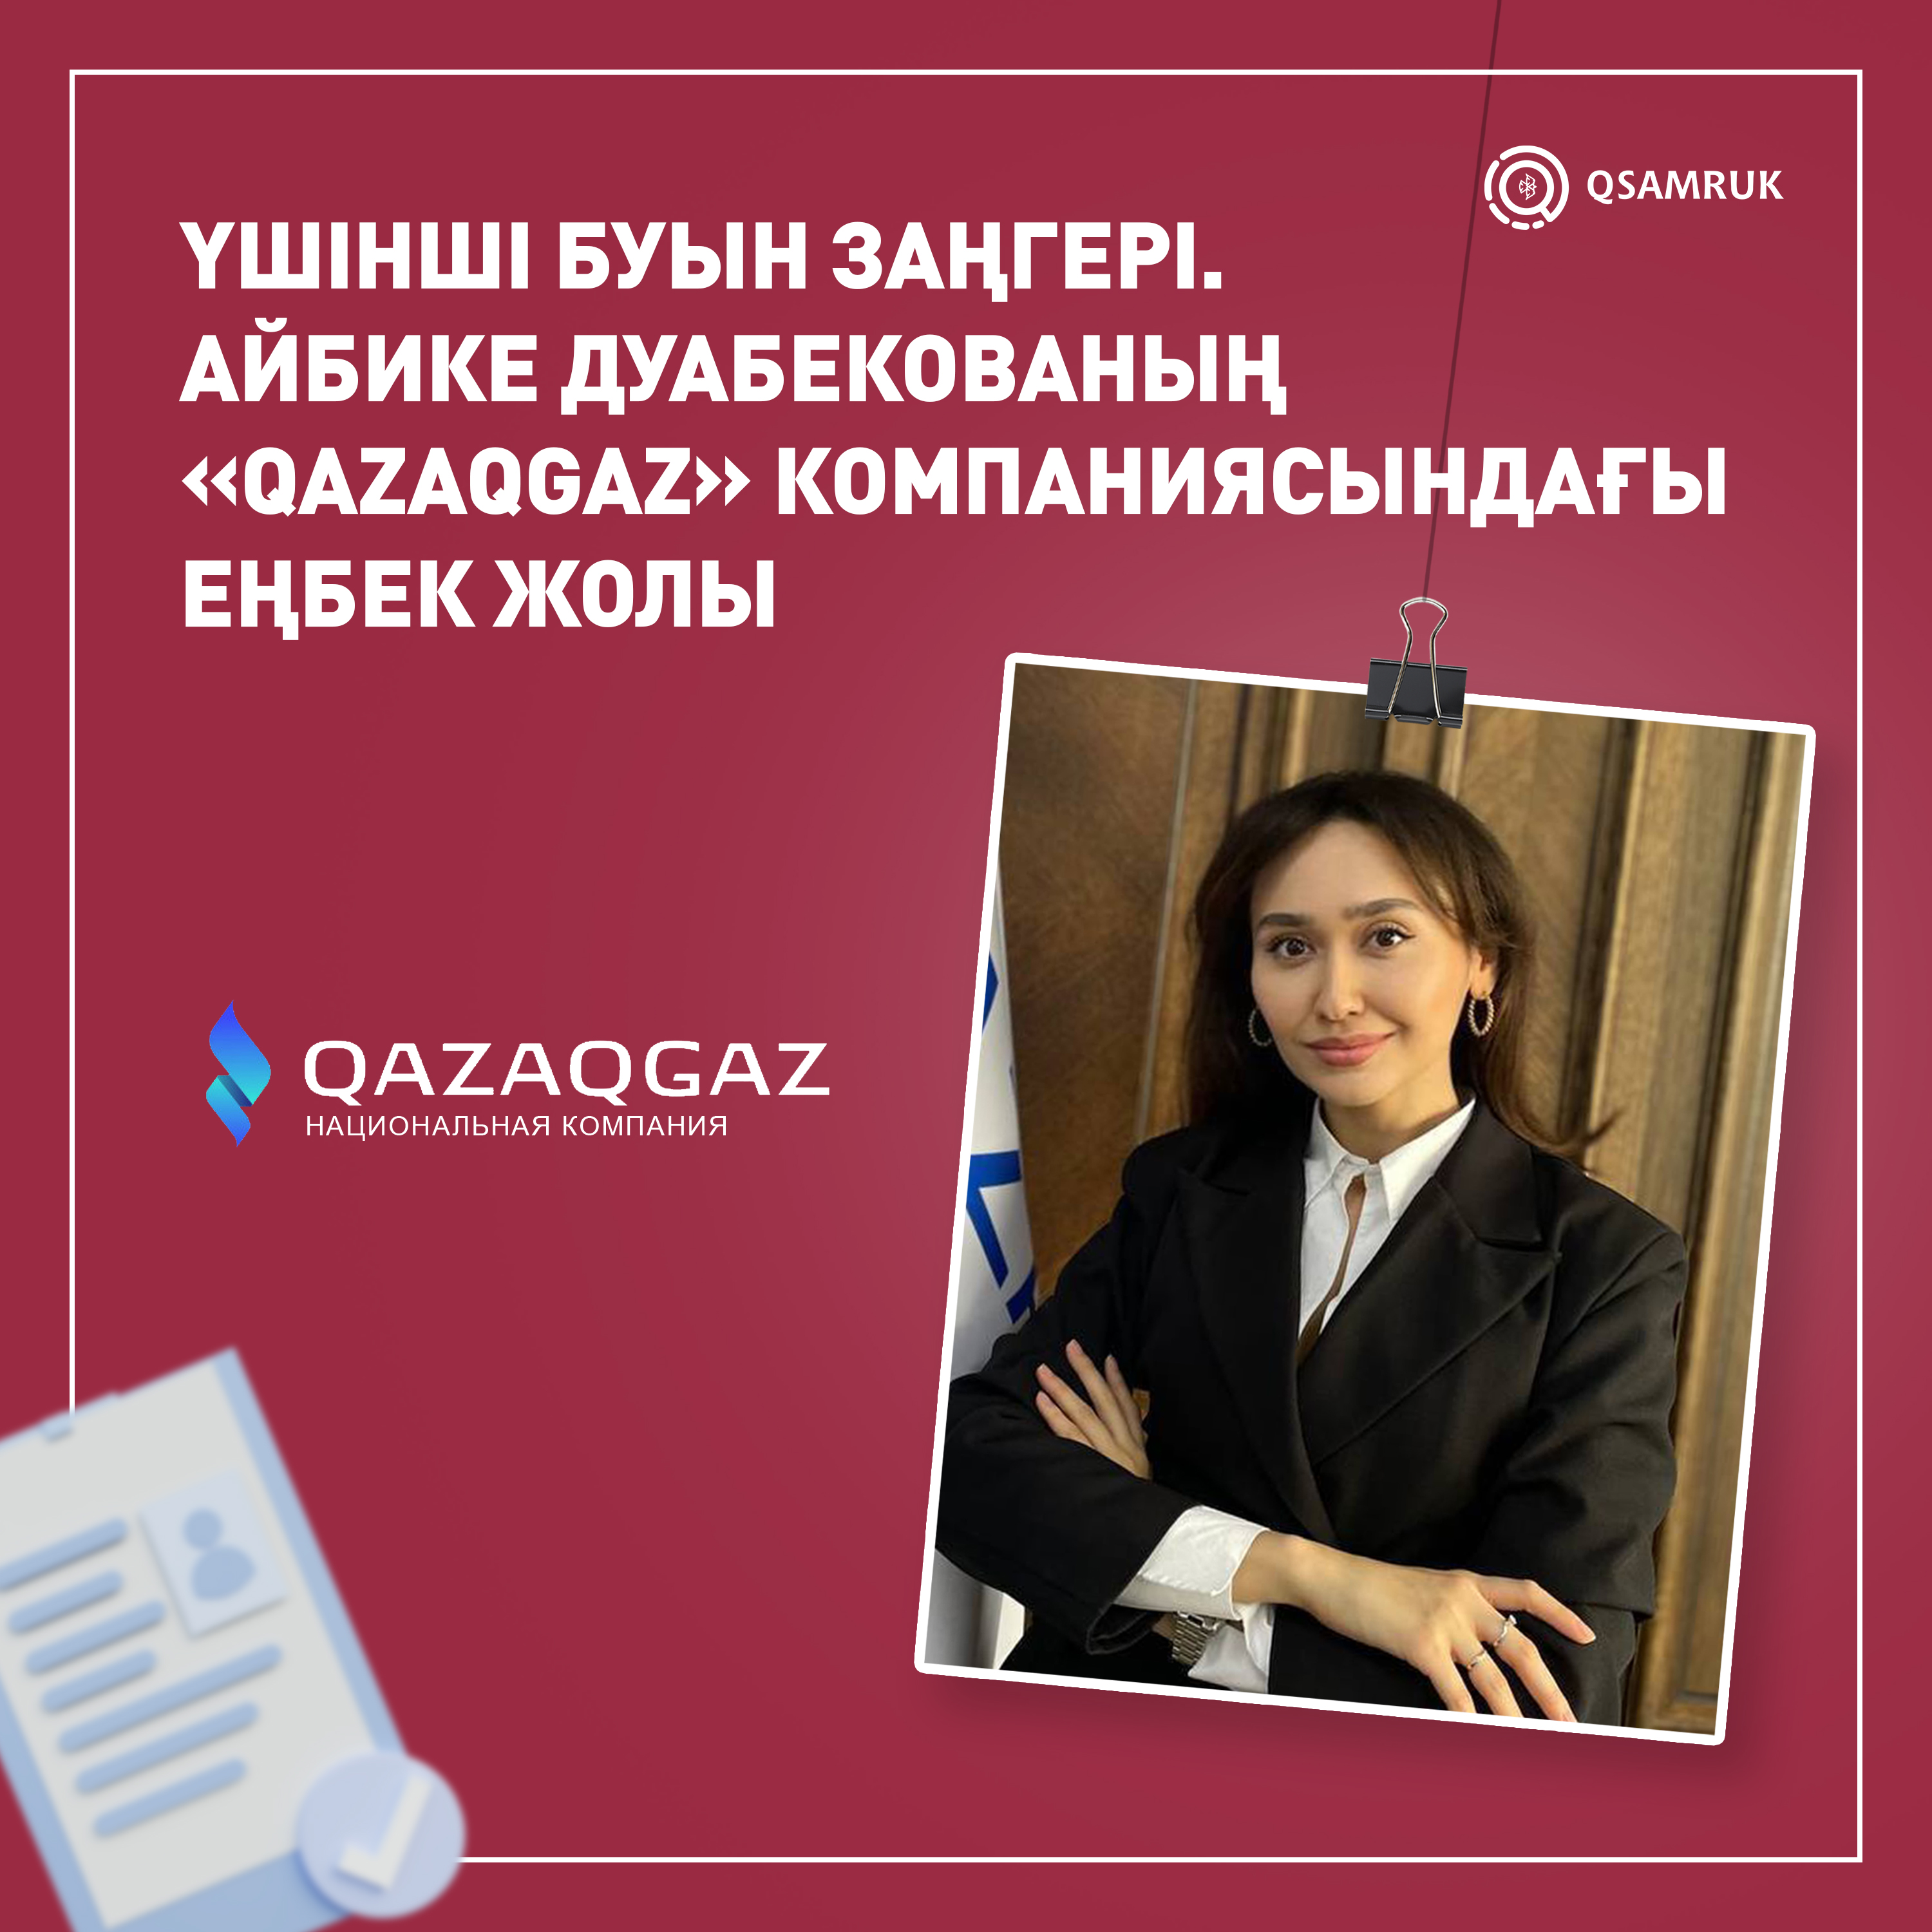 Юрист в третьем поколении. История трудоустройства Айбике Дуабековой в «QazaqGaz»